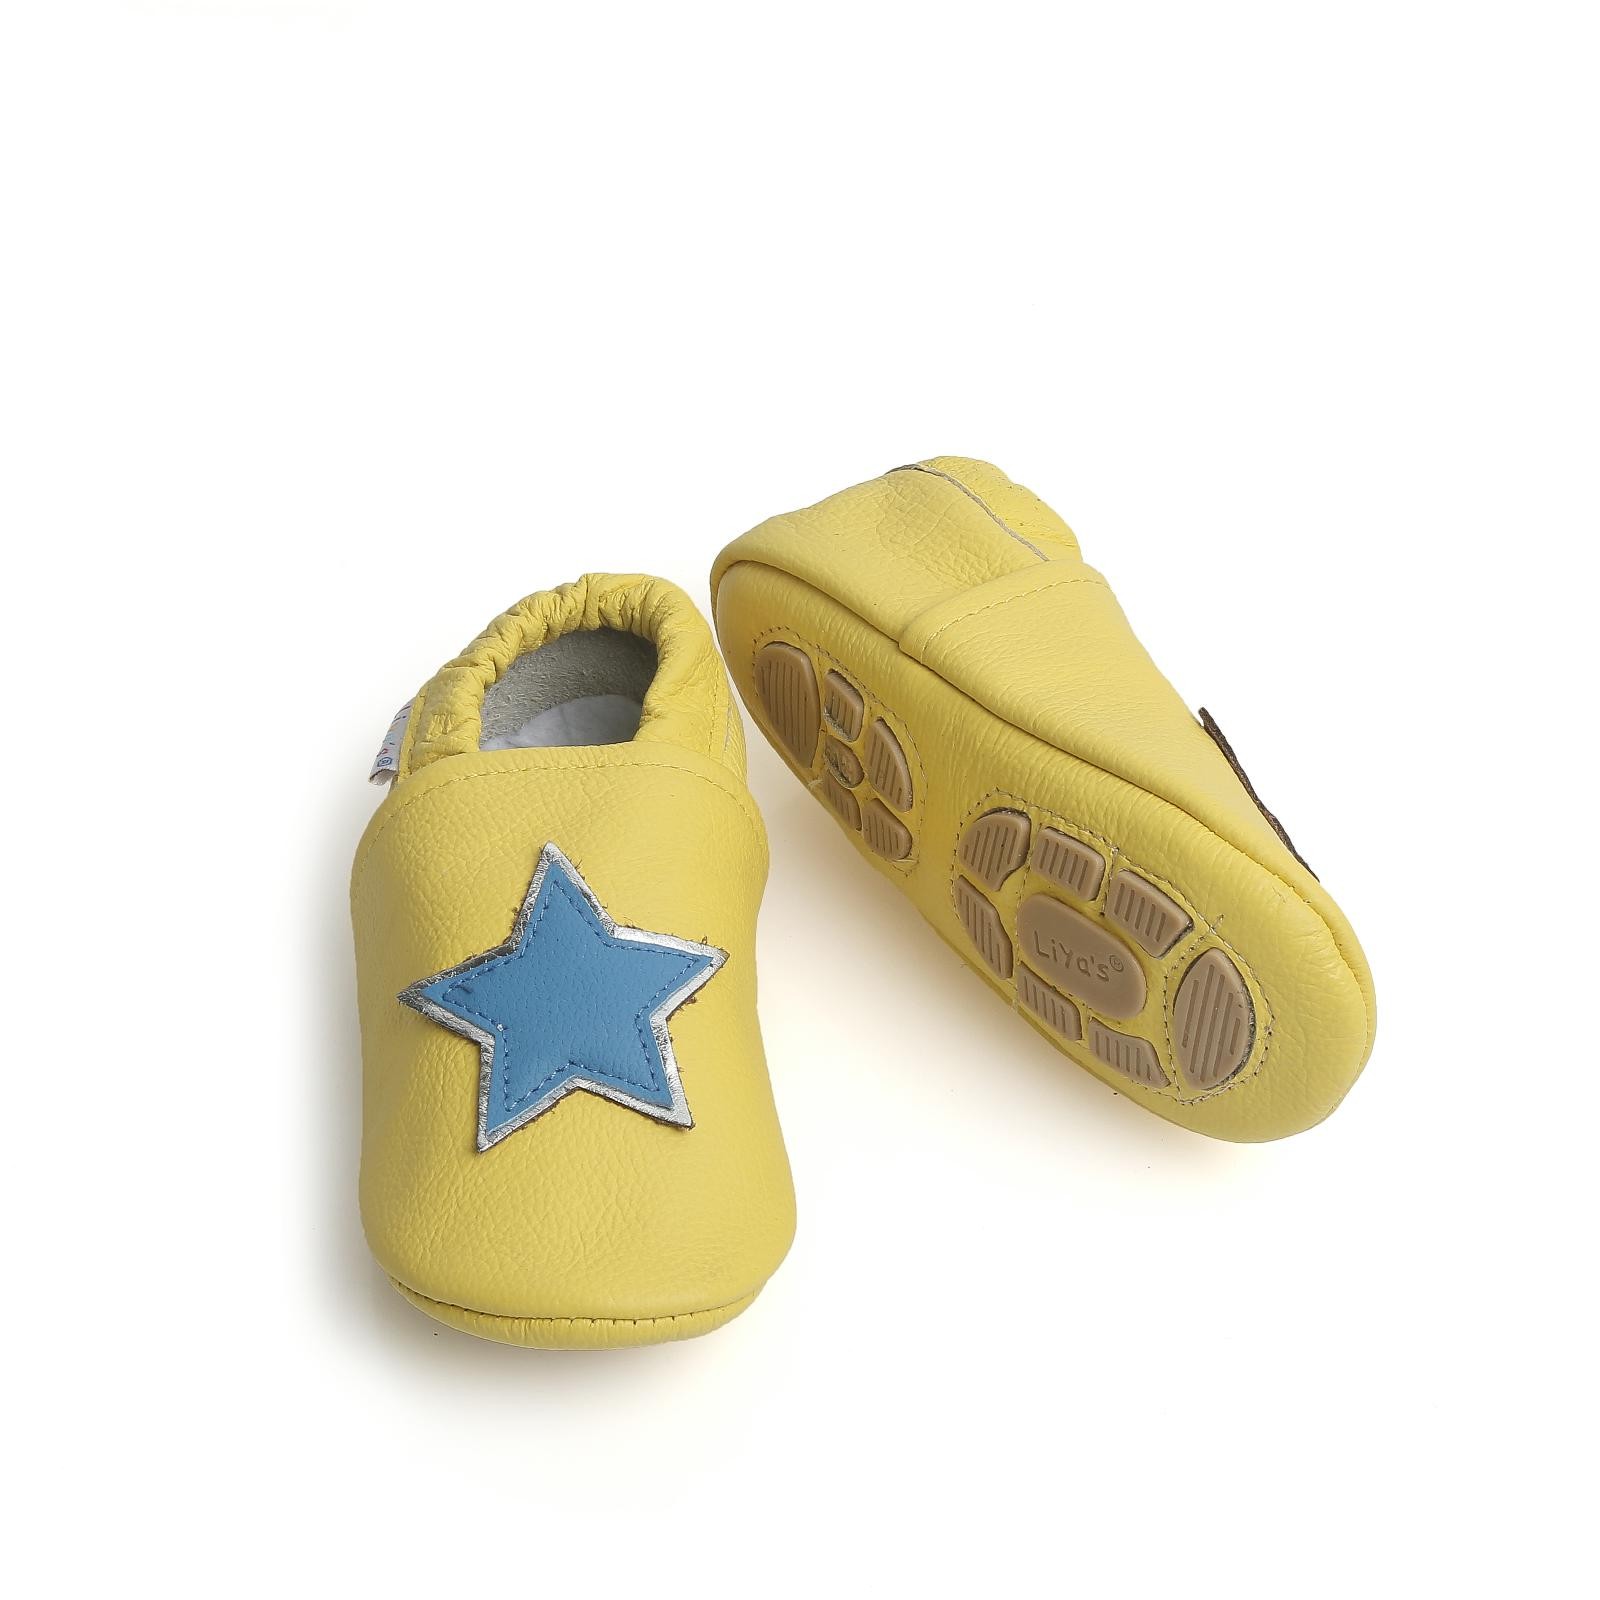 Liya's Hausschuhe Lederpuschen mit Teilgummisohle - #696 Stern in gelb